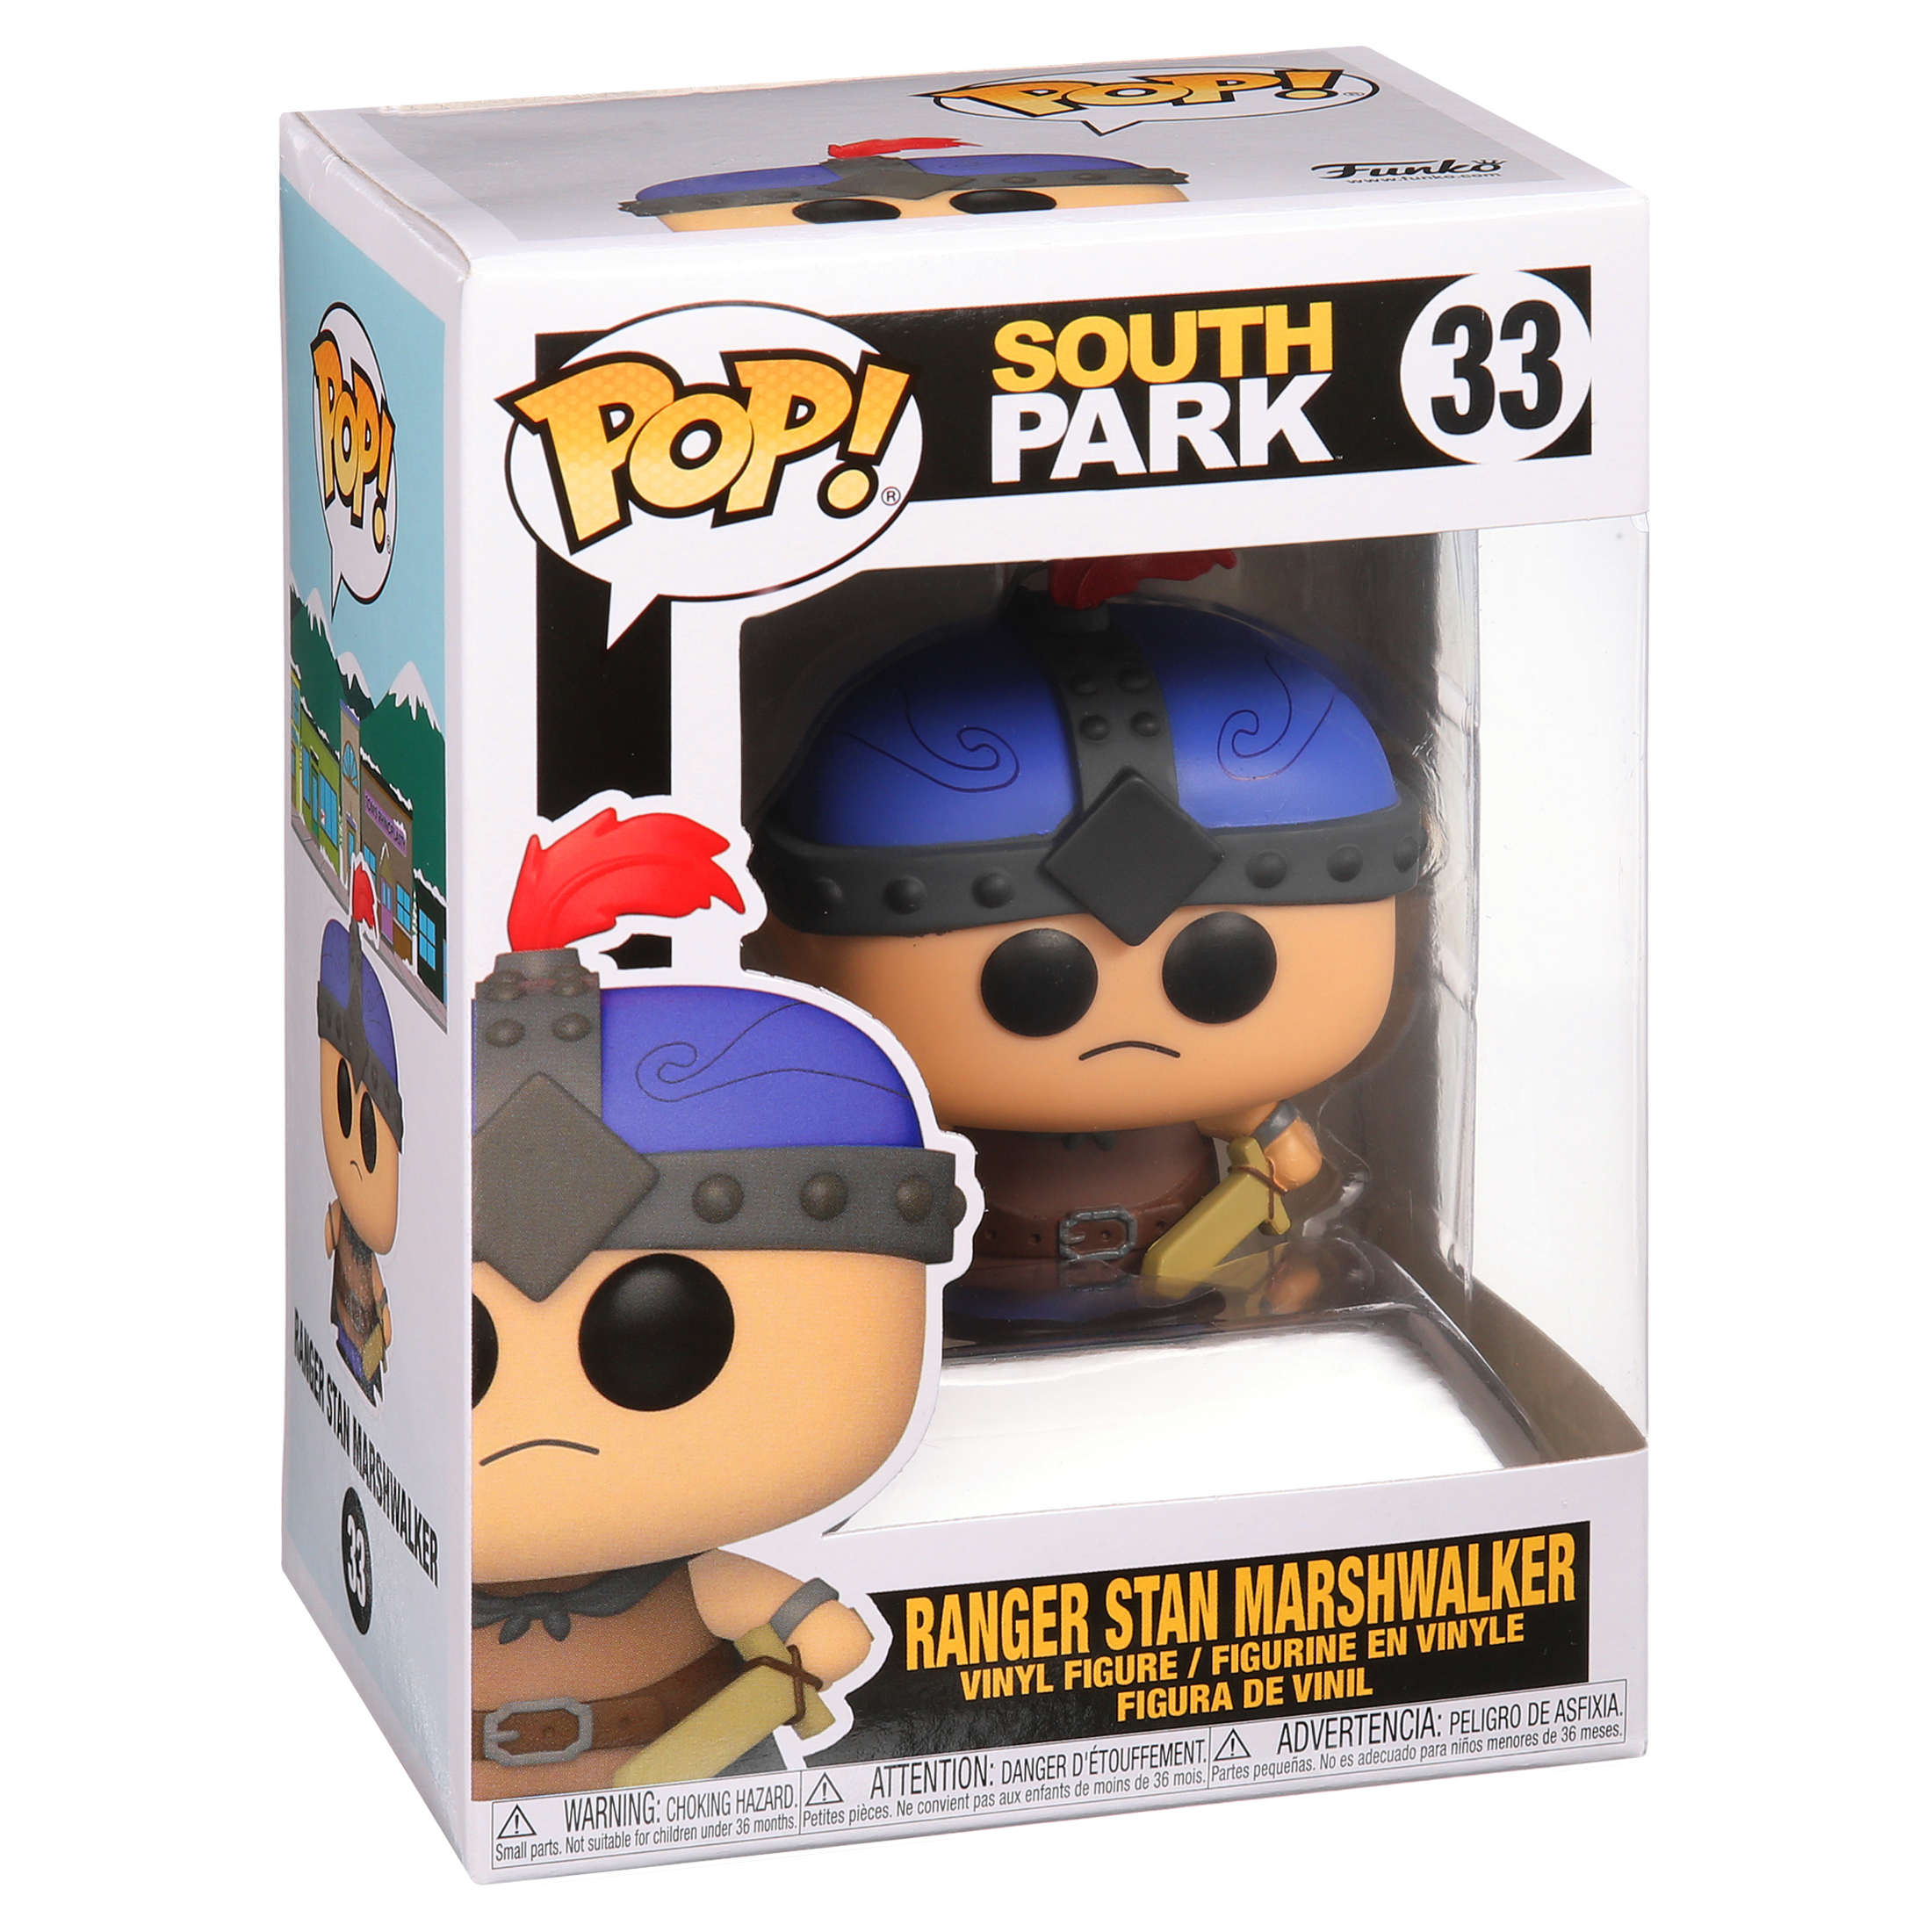 Funko Pop Vinyl Figurine Ranger Stan Marshwalker #33 - South Park Stic -  Sunnyside Gift Shop